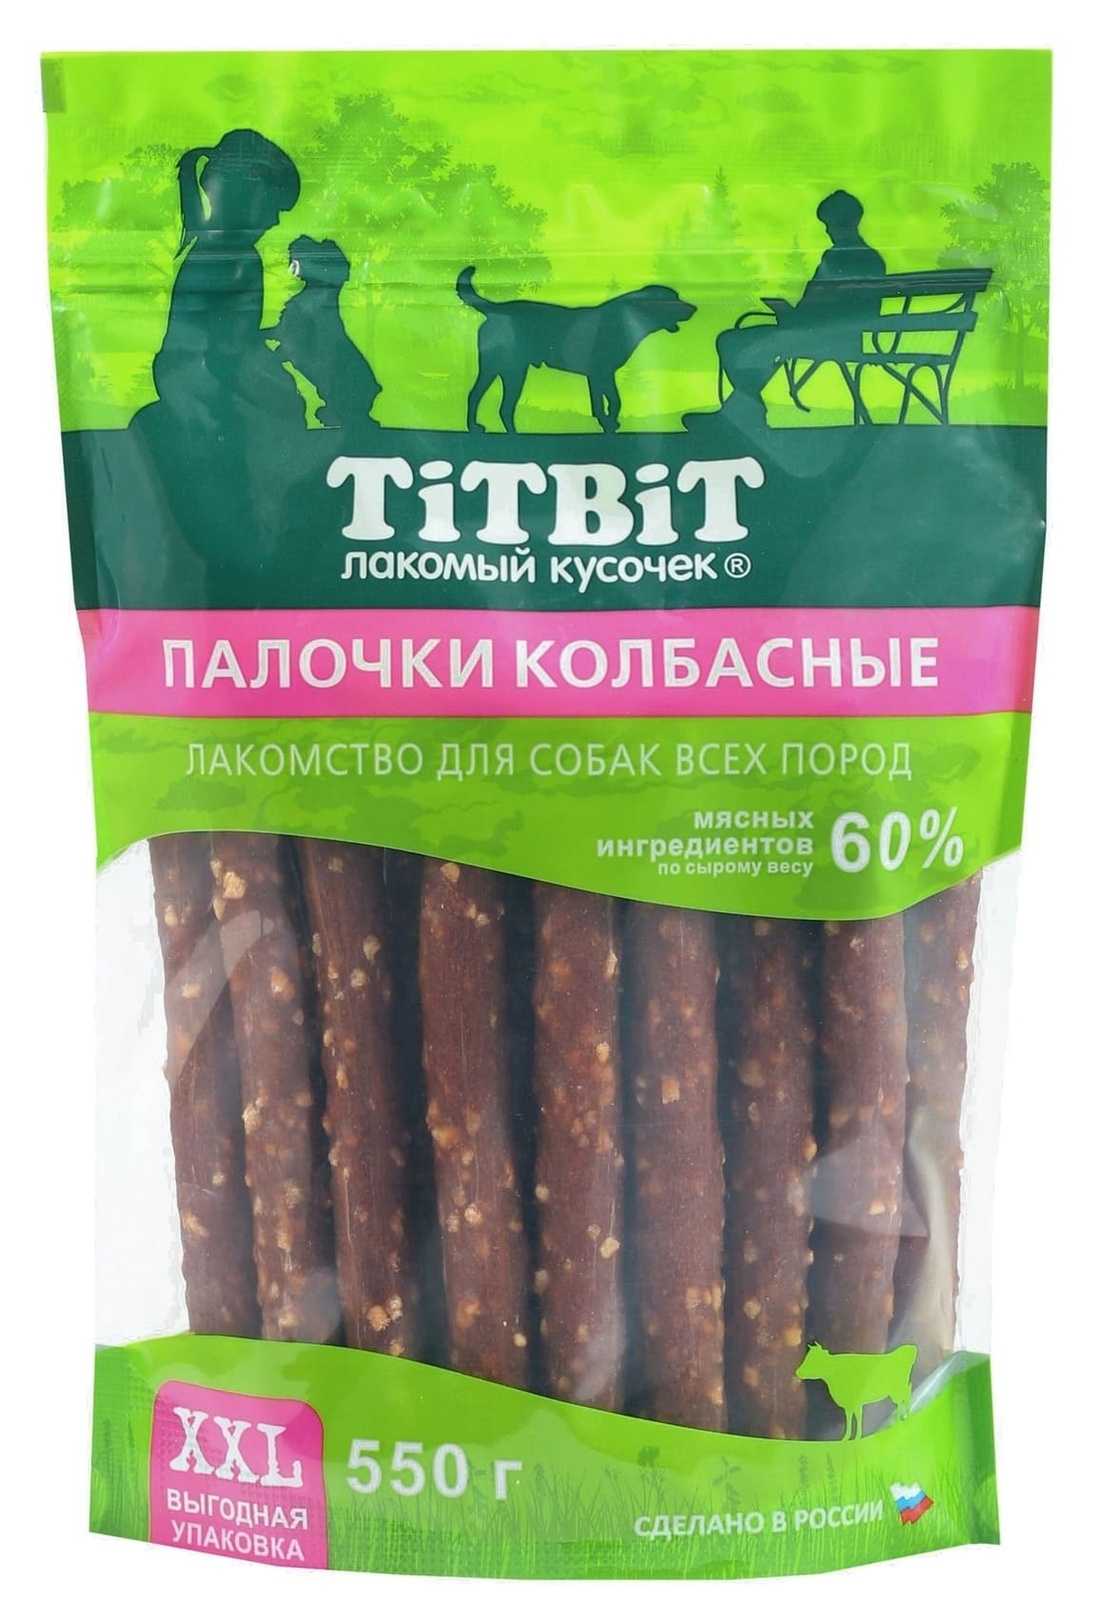 TiTBiT TiTBiT палочки колбасные для собак всех пород, выгодная упаковка XXL (550 г)